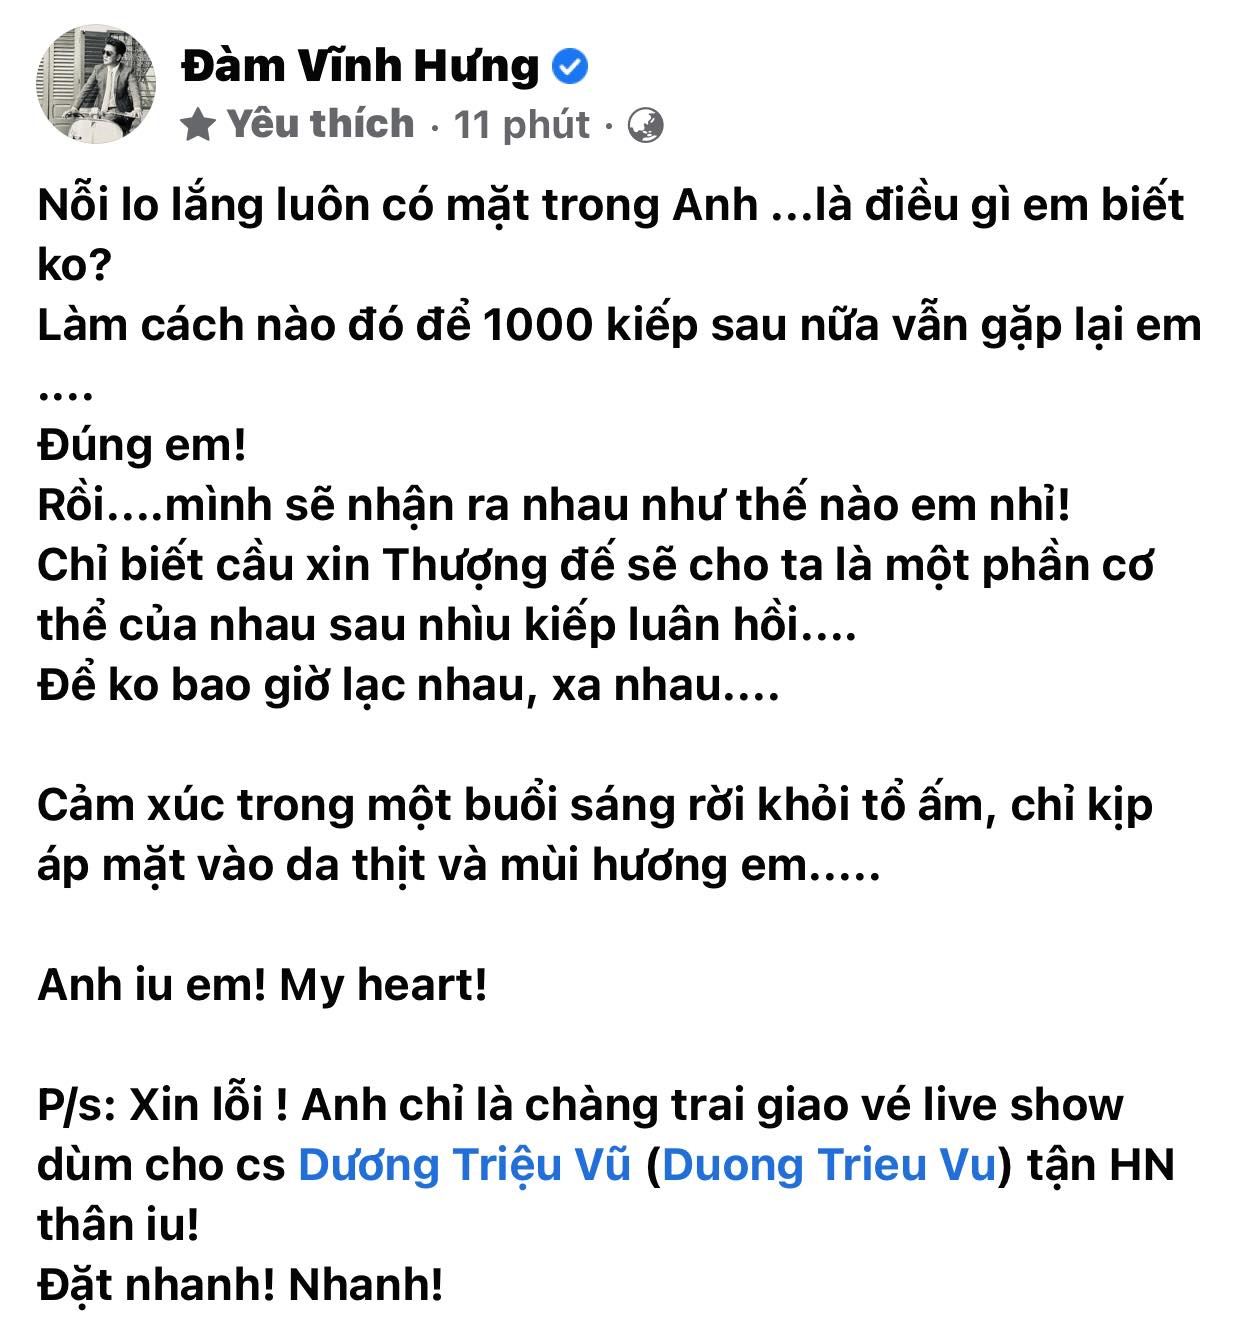 Dam-vinh-hung-cong-khai-the-hien-tinh-cam-voi-nguoi-yeu-kem-loi-nhan-ngot-ngao-anh-yeu-em -2